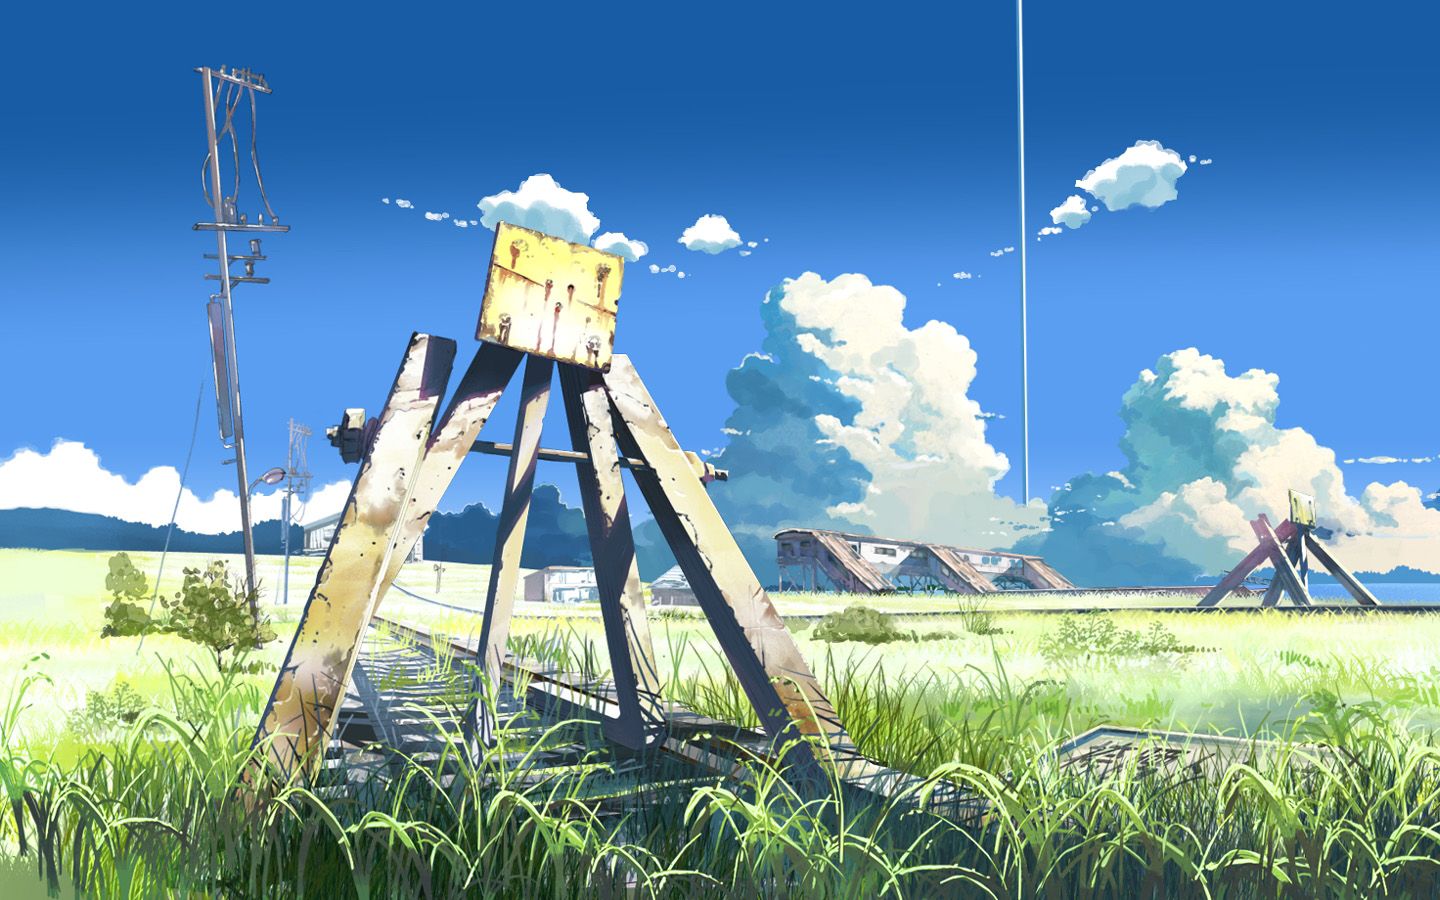 Studio Ghibli Wallpaper 1440x900 | ID:9481